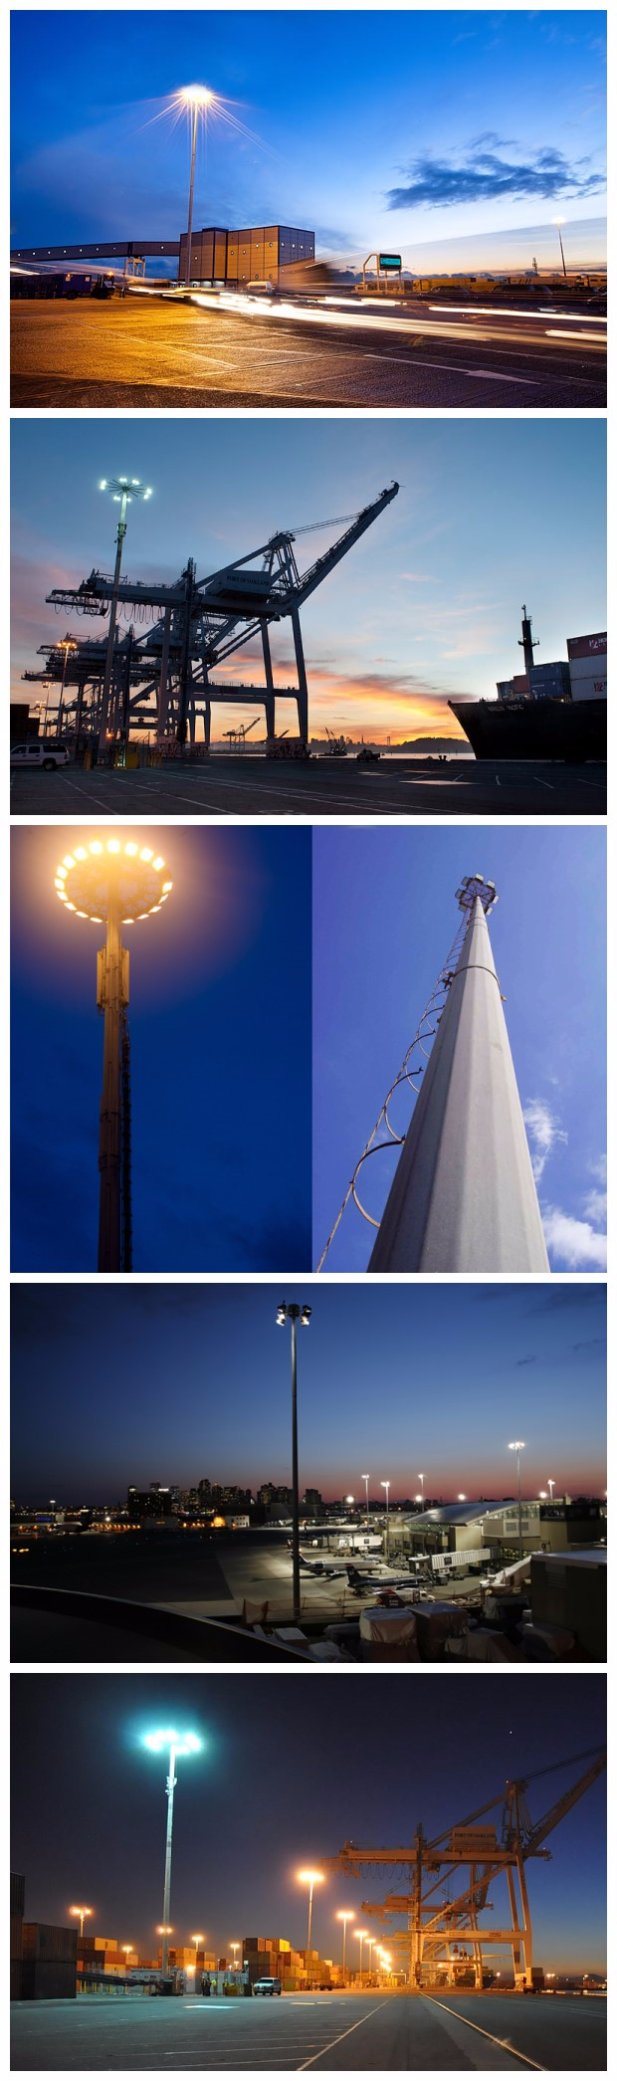 30m Outdoor Stadium Lighting Poles Cricket Lighting Tower High Mast